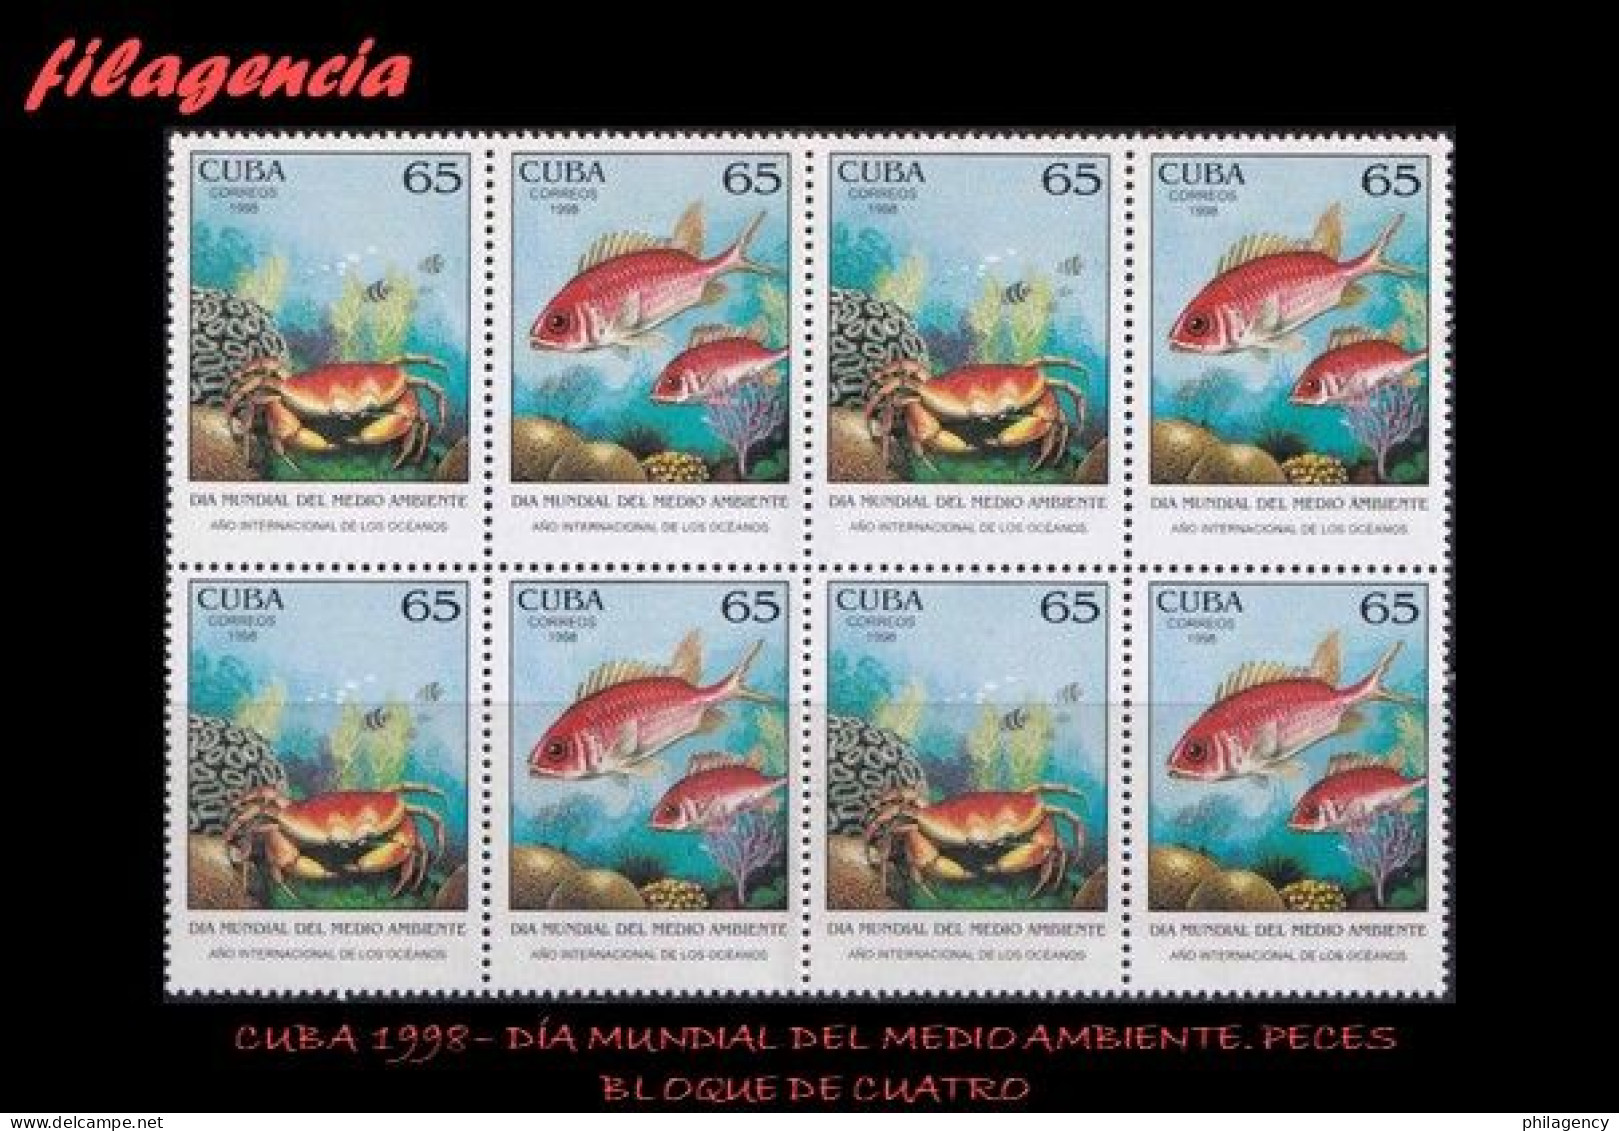 CUBA. BLOQUES DE CUATRO. 1998-16 DÍA MUNDIAL DEL MEDIO AMBIENTE. AÑO MUNDIAL DE LOS OCÉANOS. PECES. SE-TENANT - Unused Stamps